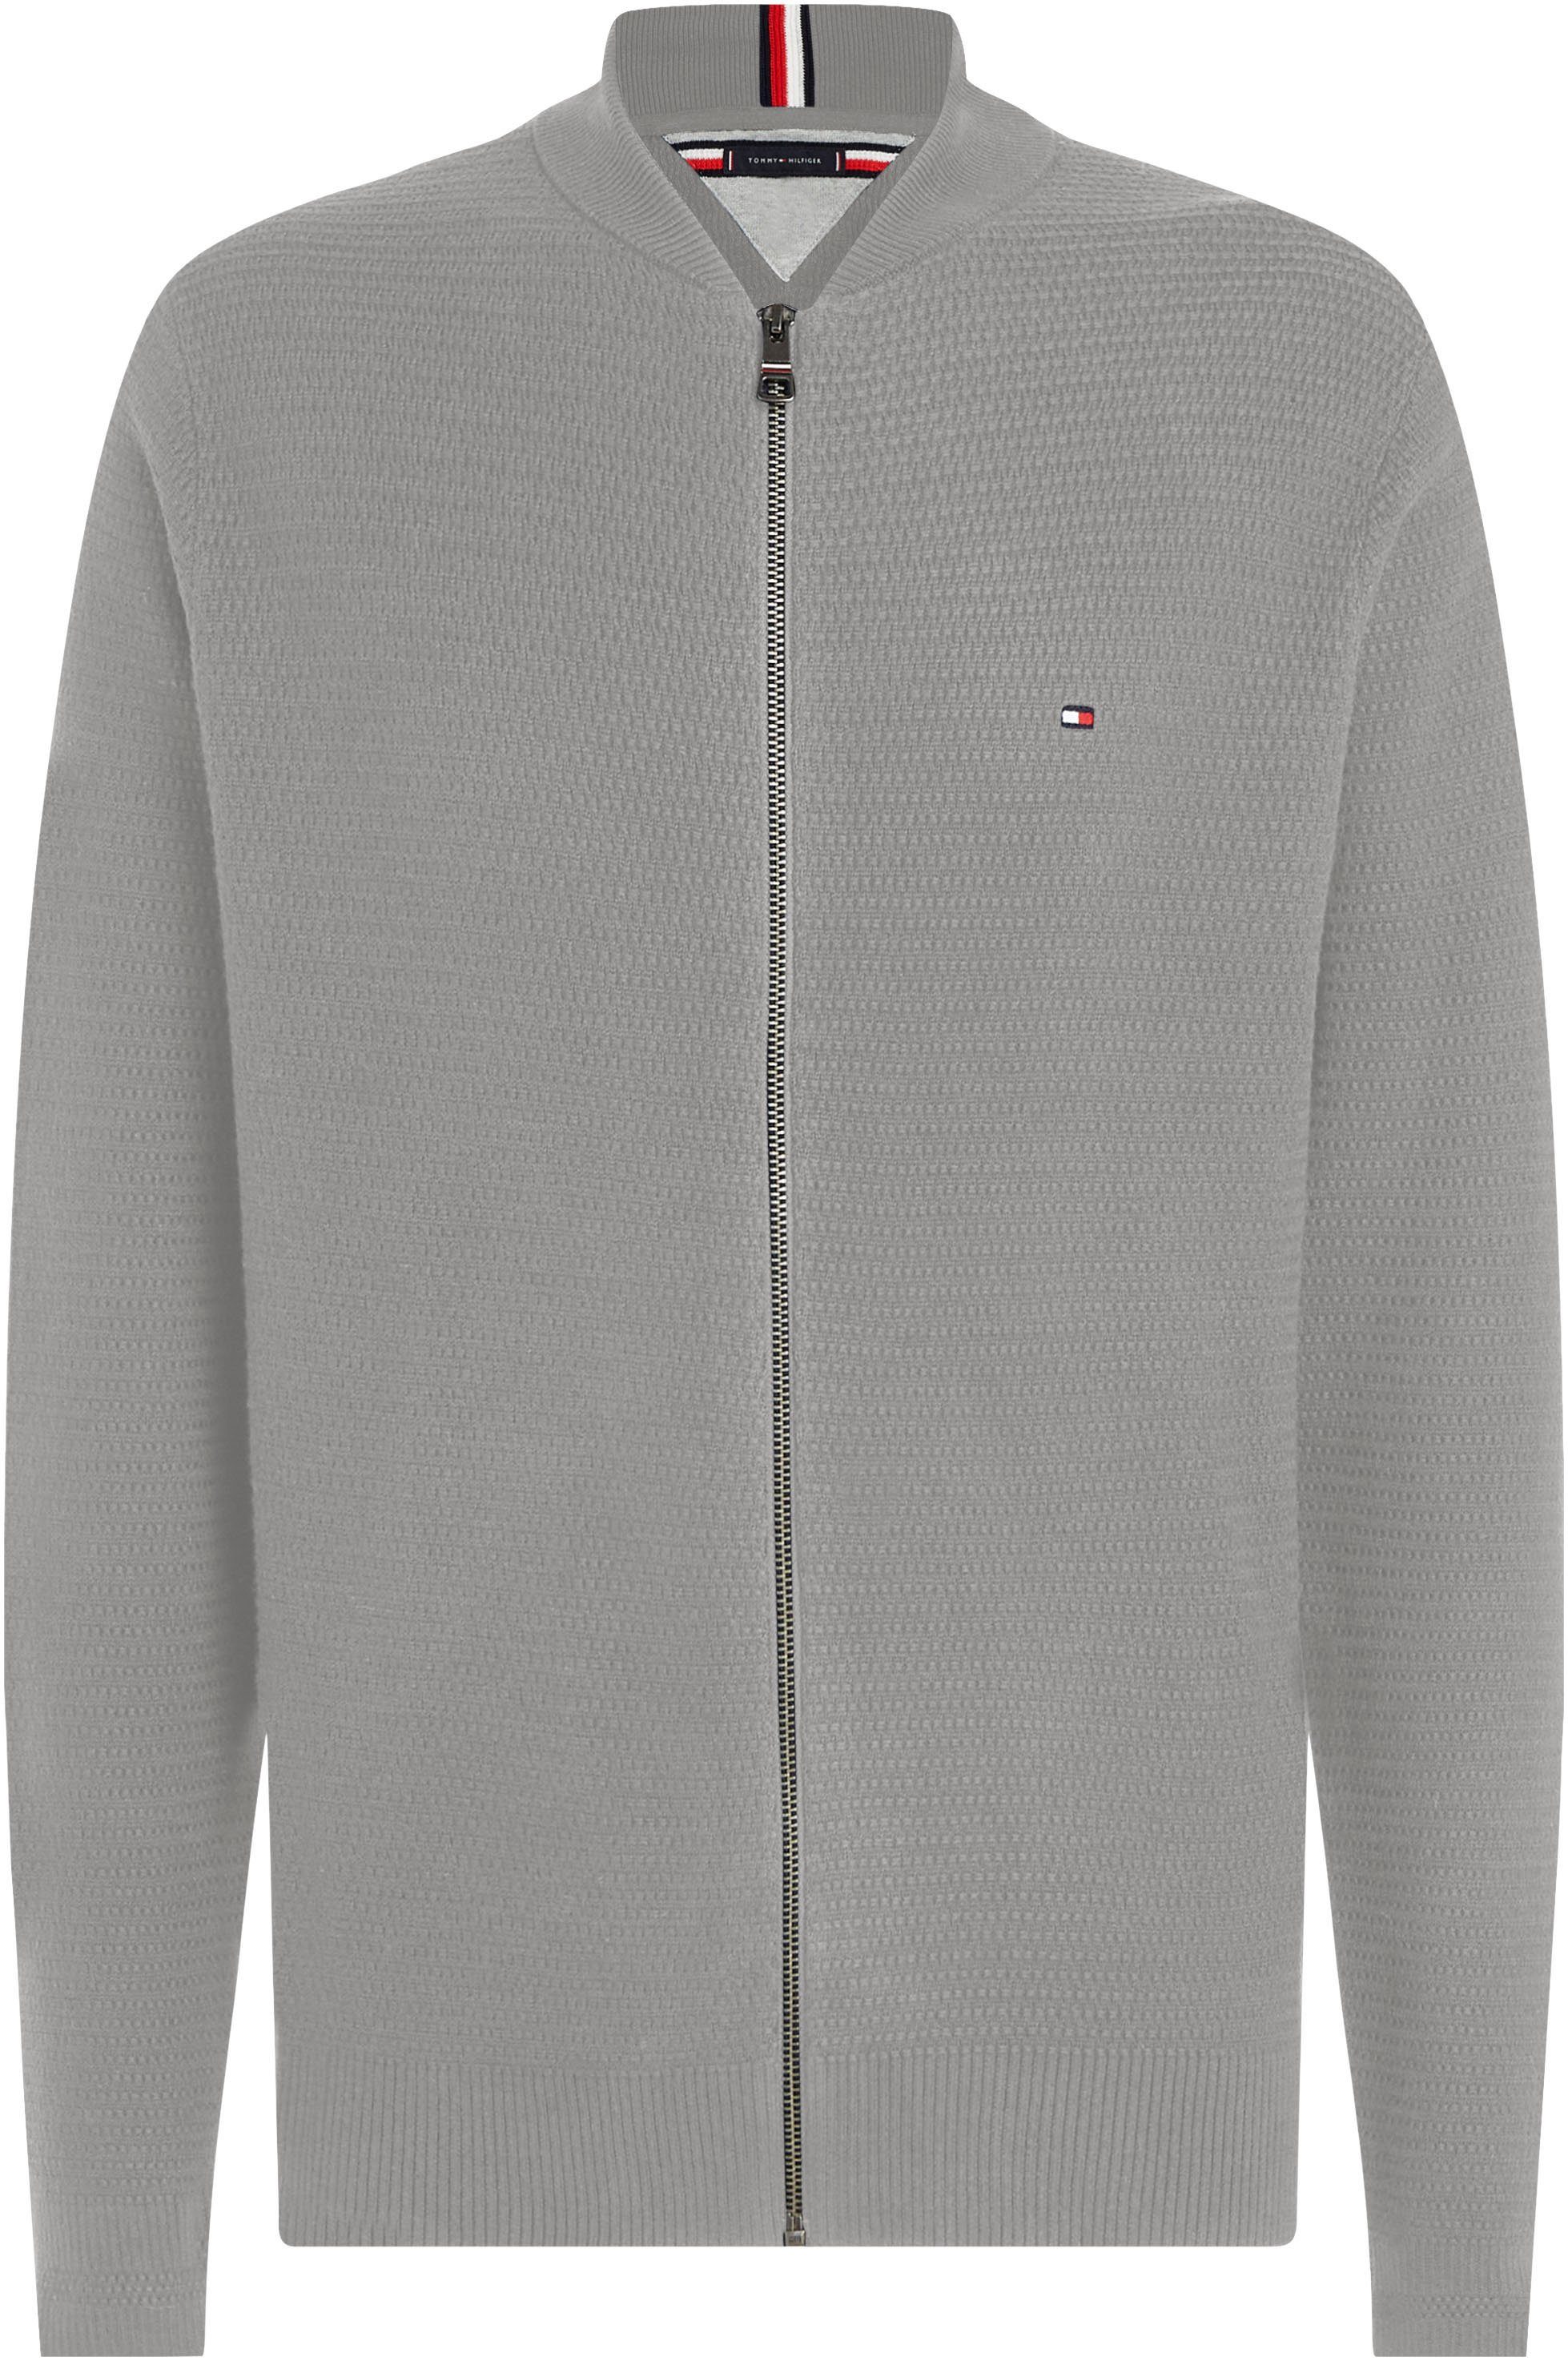 INTERLACED strukturierter ZIP Medium Hilfiger BASEBALL Sweatshirt in THROUGH Optik Grey Heather Tommy